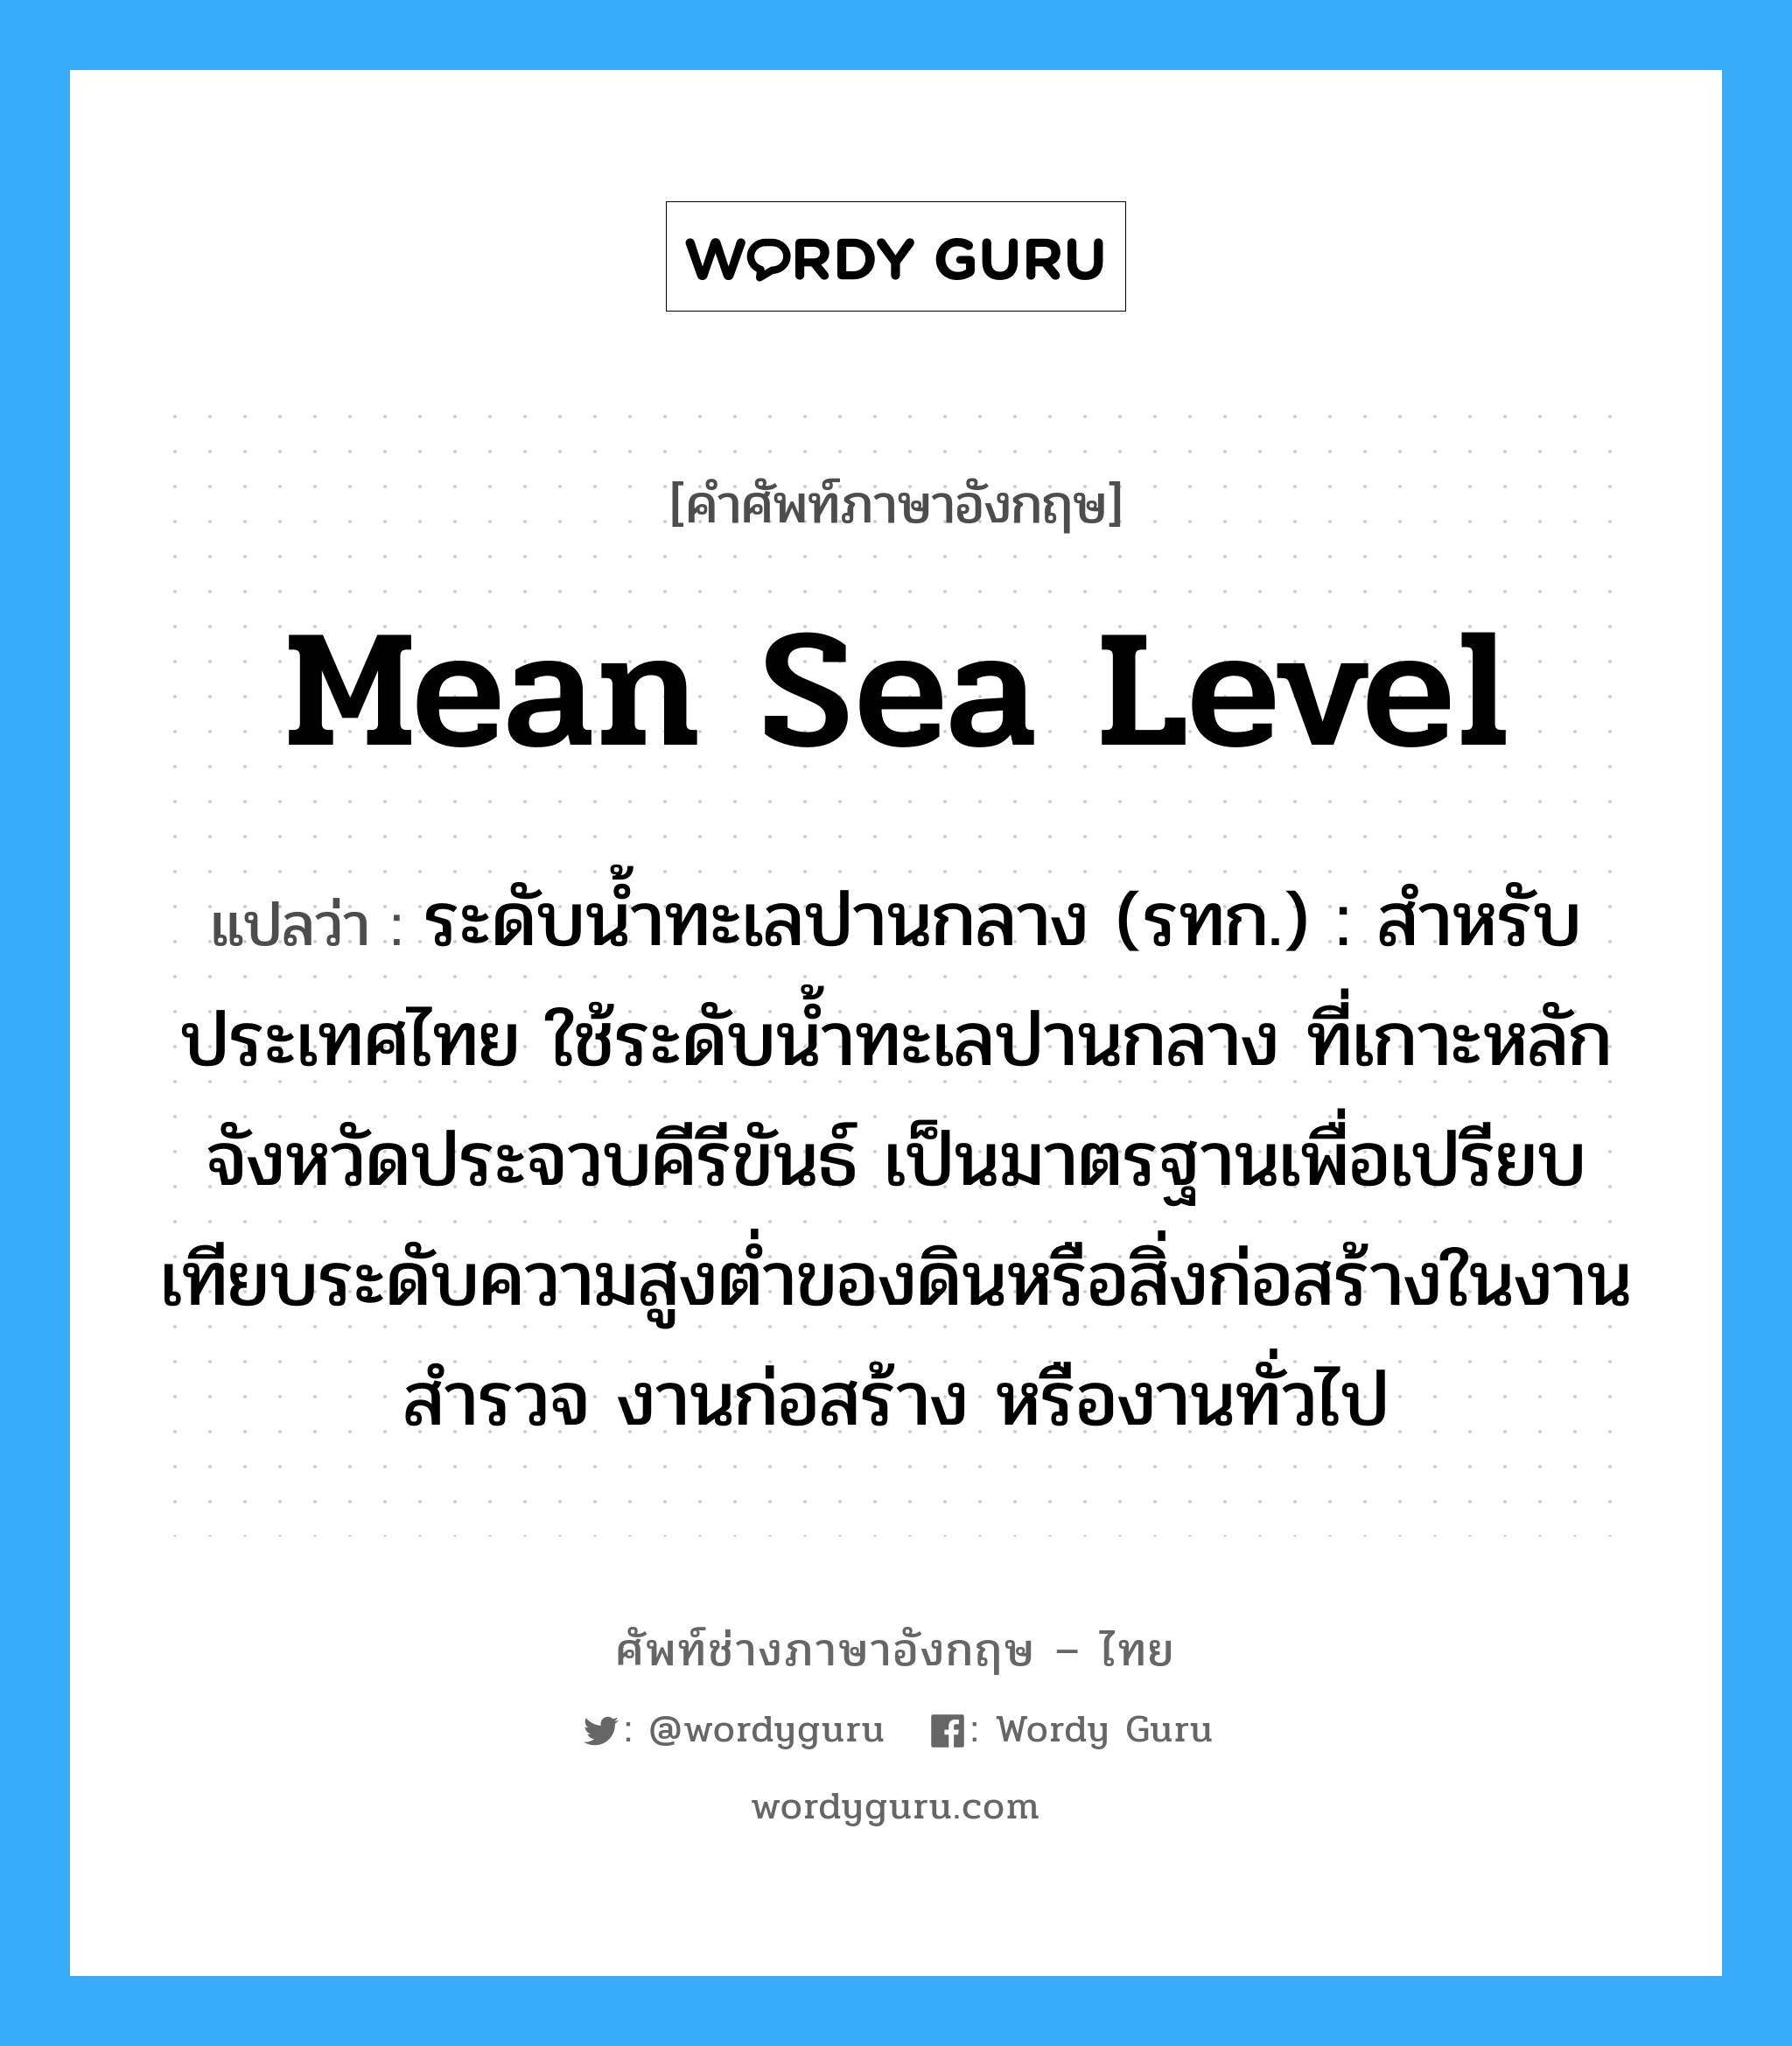 mean sea level แปลว่า?, คำศัพท์ช่างภาษาอังกฤษ - ไทย mean sea level คำศัพท์ภาษาอังกฤษ mean sea level แปลว่า ระดับน้ำทะเลปานกลาง (รทก.) : สำหรับประเทศไทย ใช้ระดับน้ำทะเลปานกลาง ที่เกาะหลัก จังหวัดประจวบคีรีขันธ์ เป็นมาตรฐานเพื่อเปรียบเทียบระดับความสูงต่ำของดินหรือสิ่งก่อสร้างในงานสำรวจ งานก่อสร้าง หรืองานทั่วไป